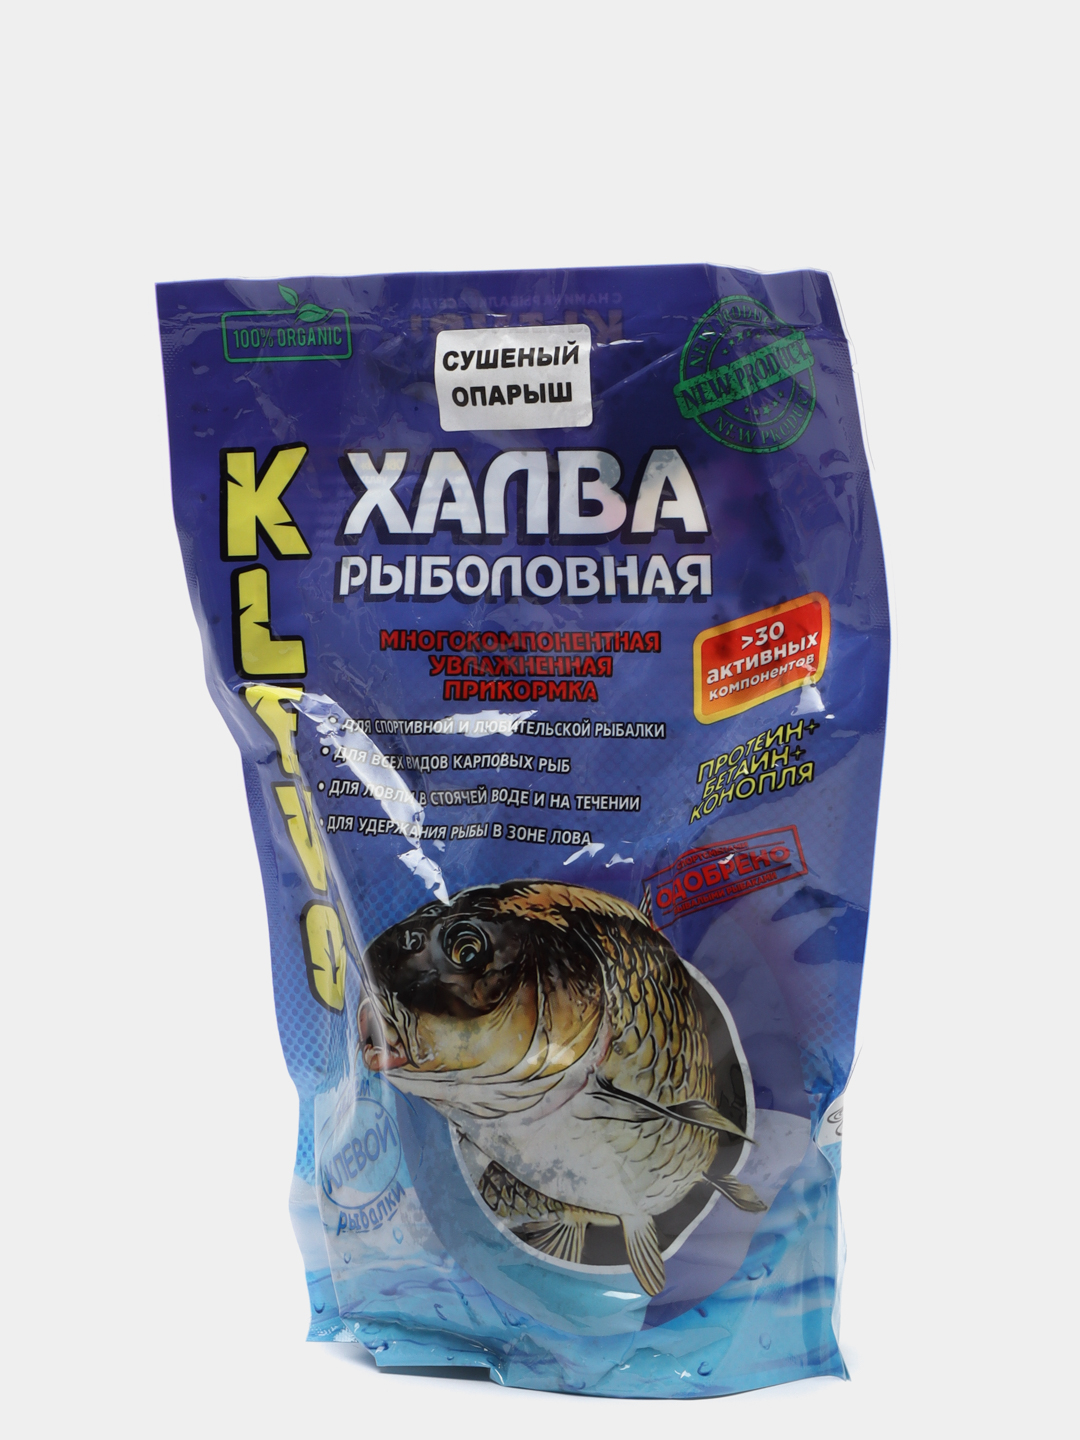 Халва рыболовная высокопротеиновая, многокомпонентная увлажненная прикормка(900гр) купить по цене 260 ₽ в интернет-магазине KazanExpress